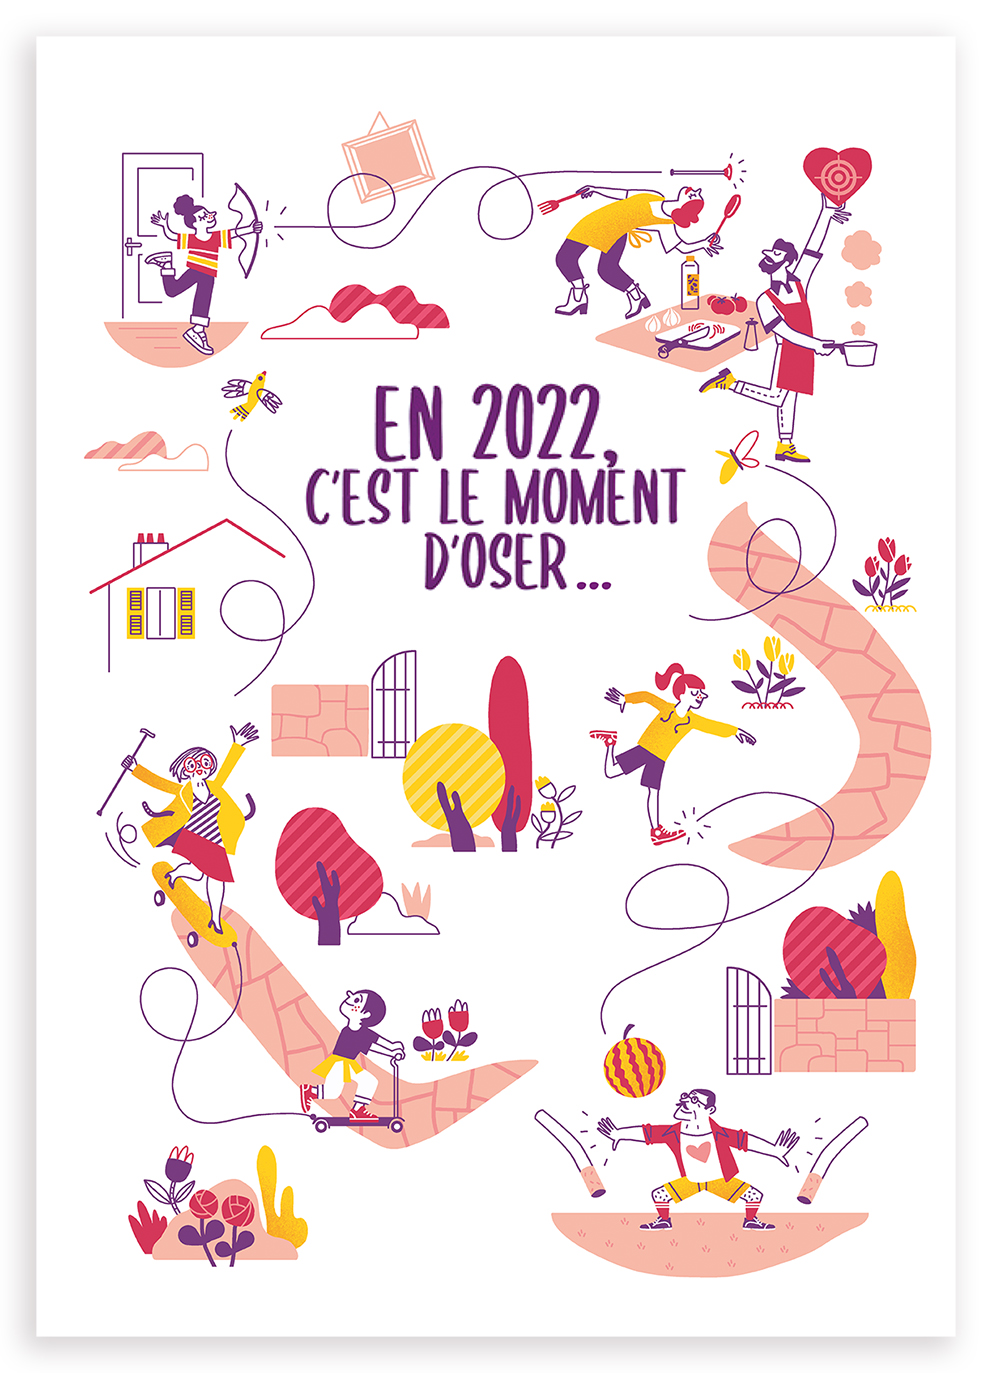 Clod illustration voeux 2022 de Fédération Française de Cardiologie